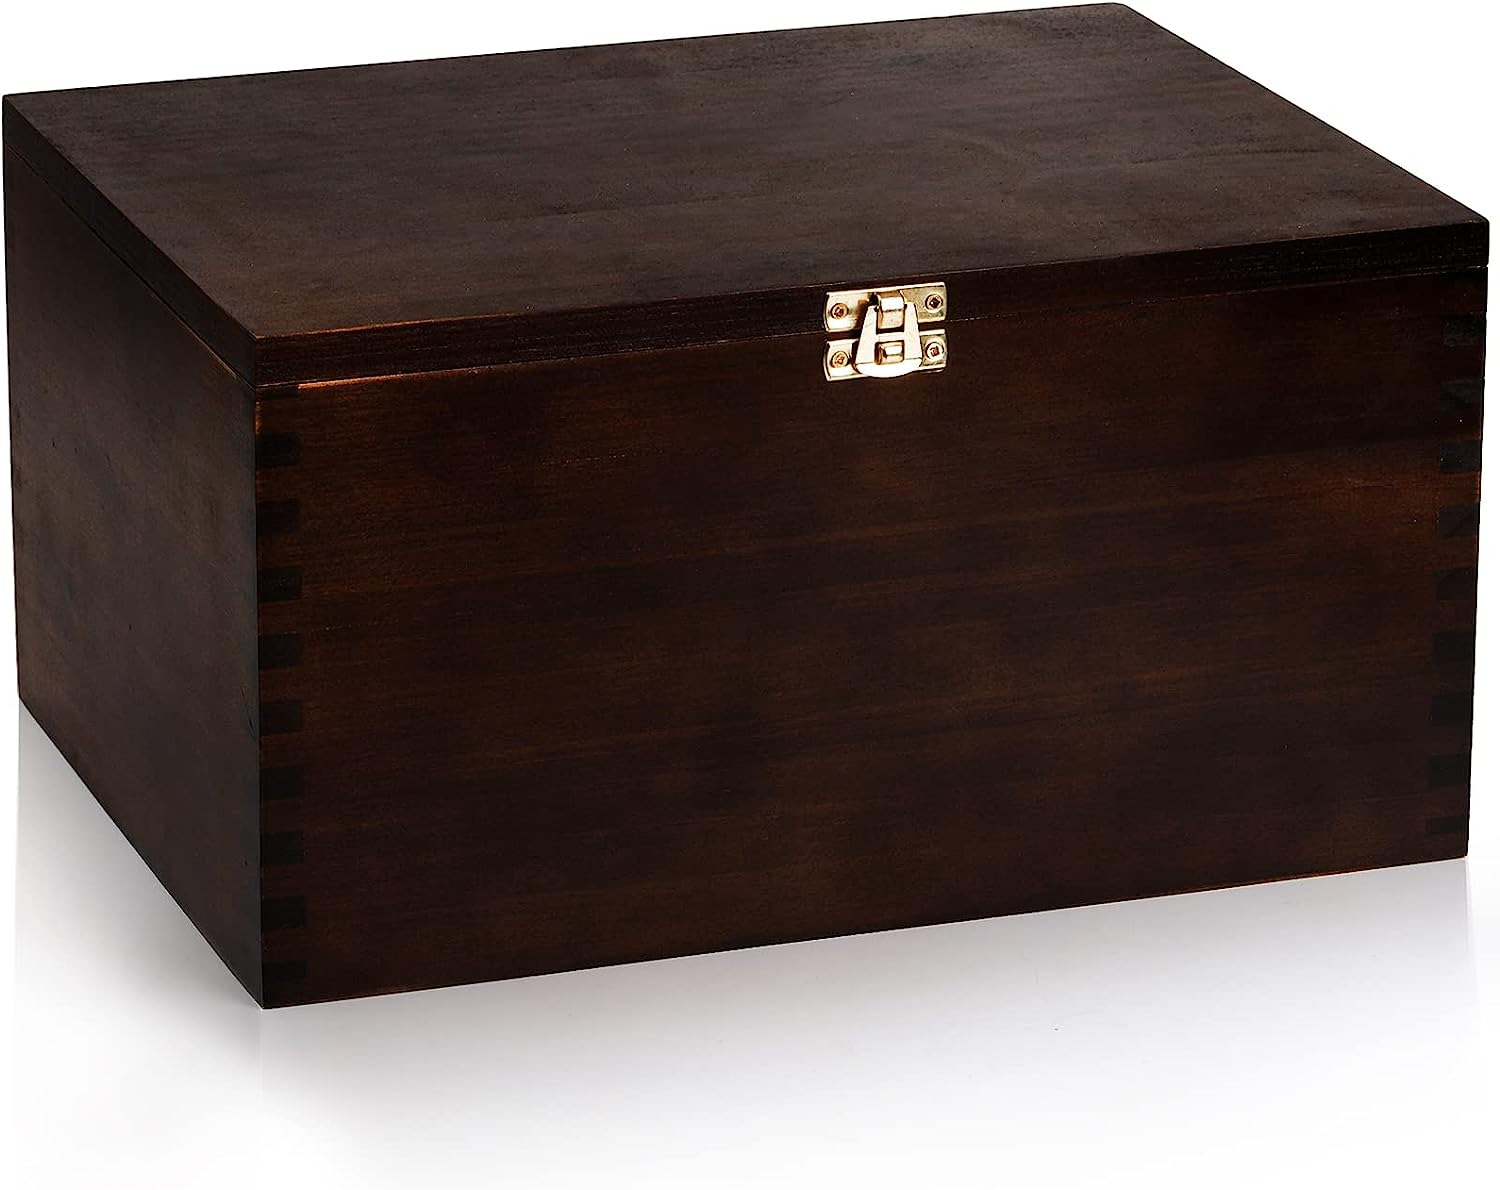 Yesland Wooden Large Storage Box, Keepsake Box, Gift Box With Hinged Lid 